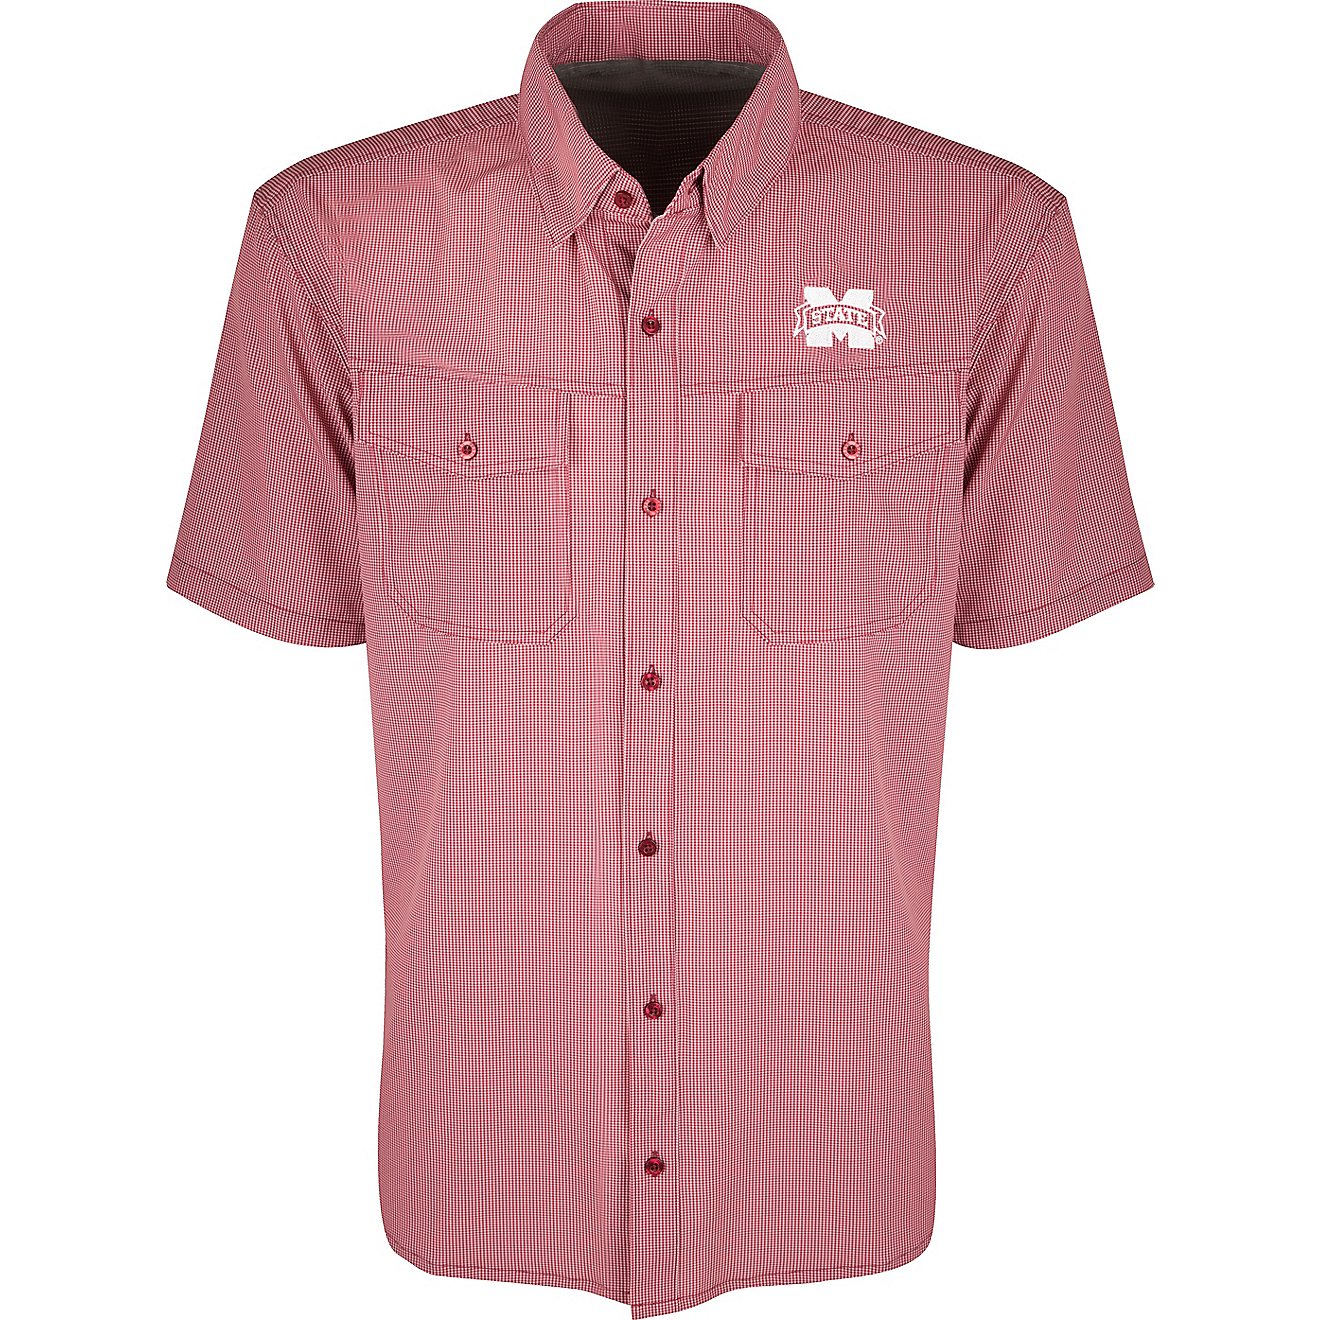 Drake Men's Mississippi State University Traveler's Short Sleeve Shirt                                                           - view number 1